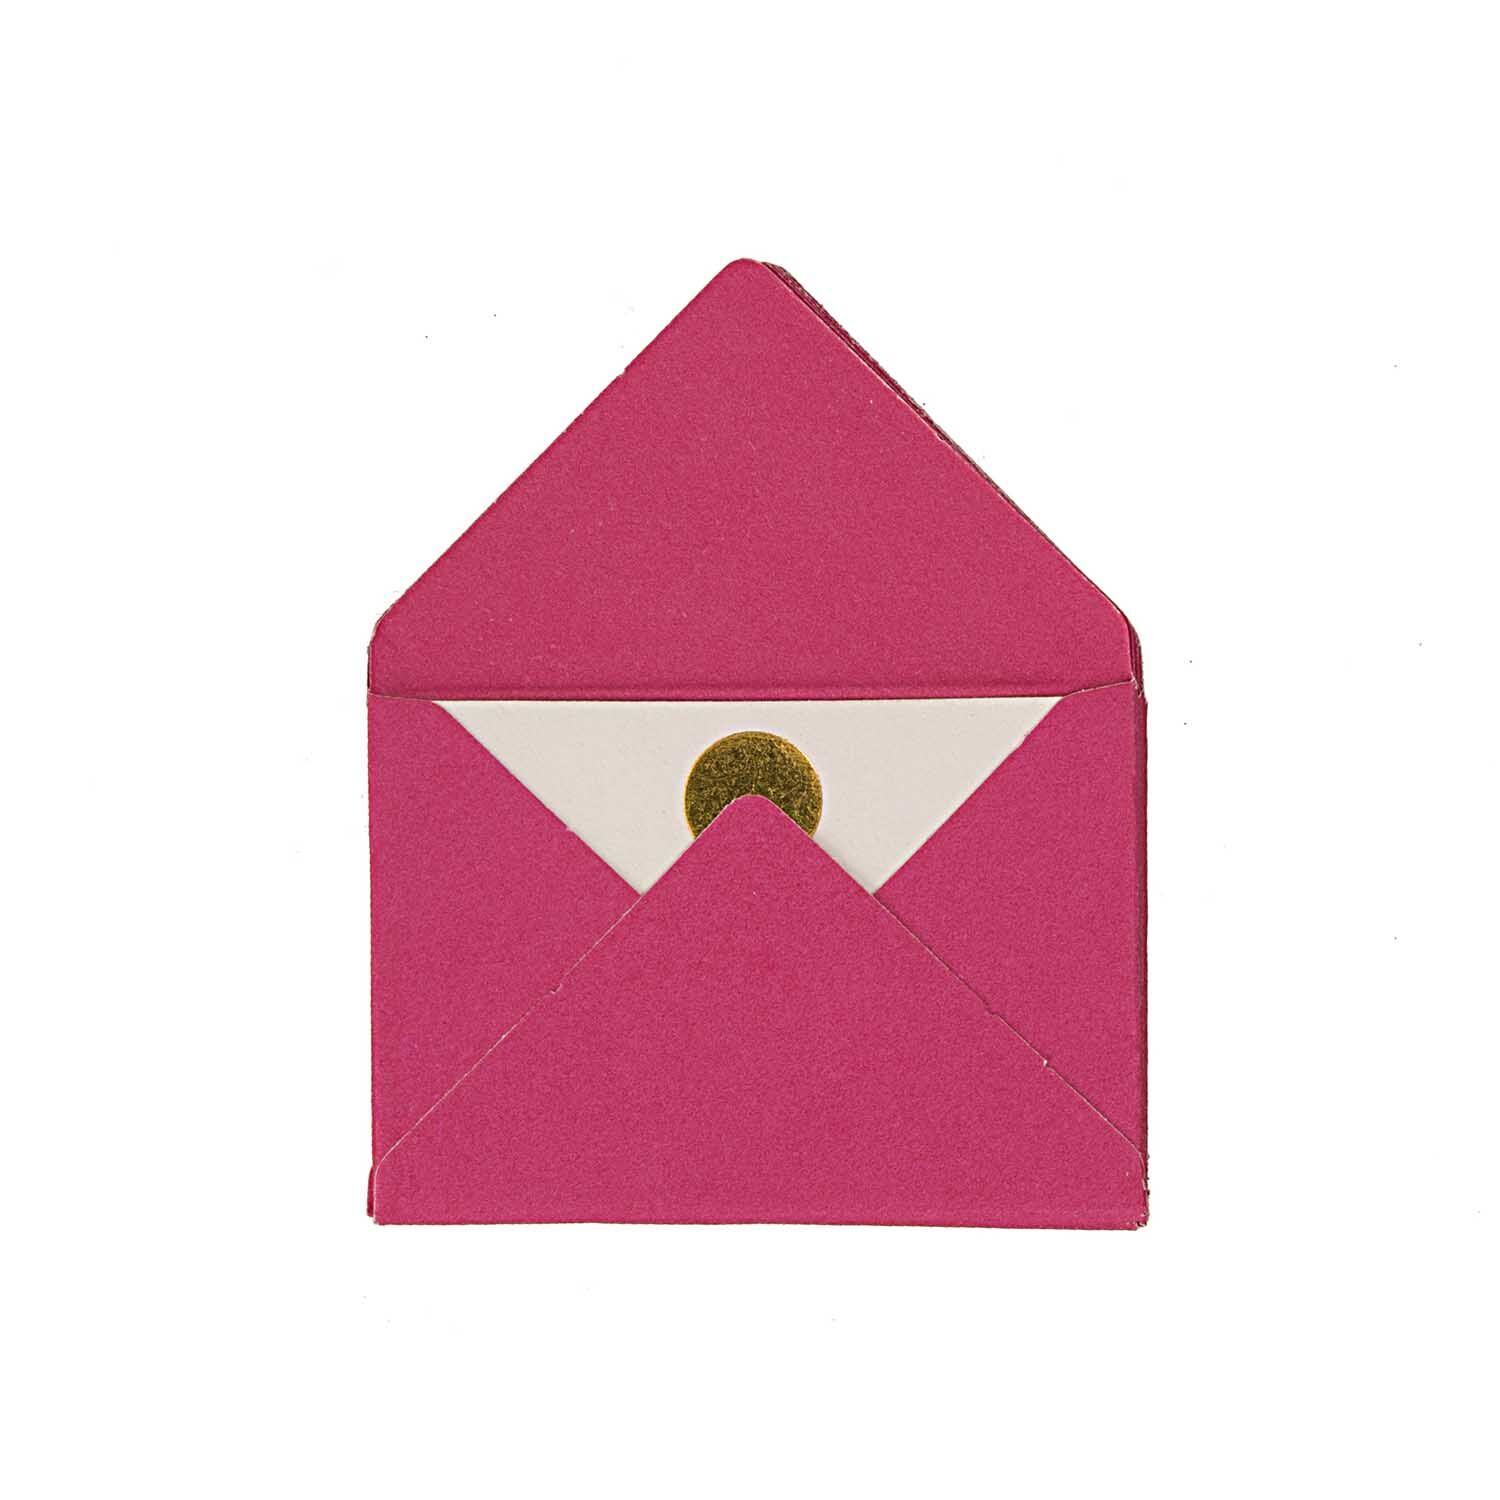 NEU Mini Briefumschläge & Karten, 3 x 4,5 cm, 10 Stück, Pink - Hot Foil Gold